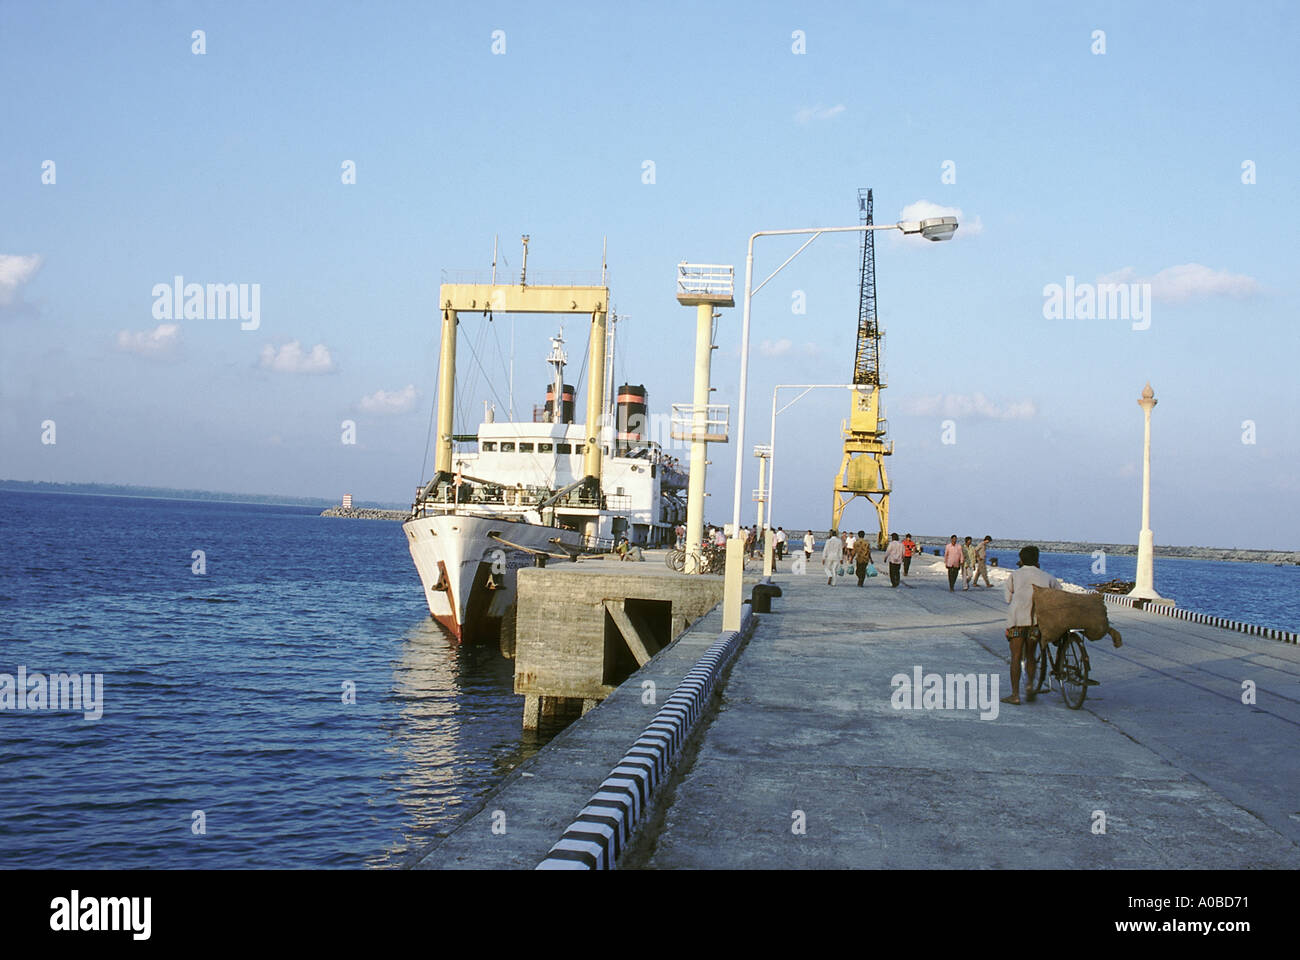 Eine typische Steg auf den Andaman-Inseln. In der Regel gibt es eine Menge Aktivitäten auf und in der Nähe der Anlegestelle auf "Boot Days". Stockfoto